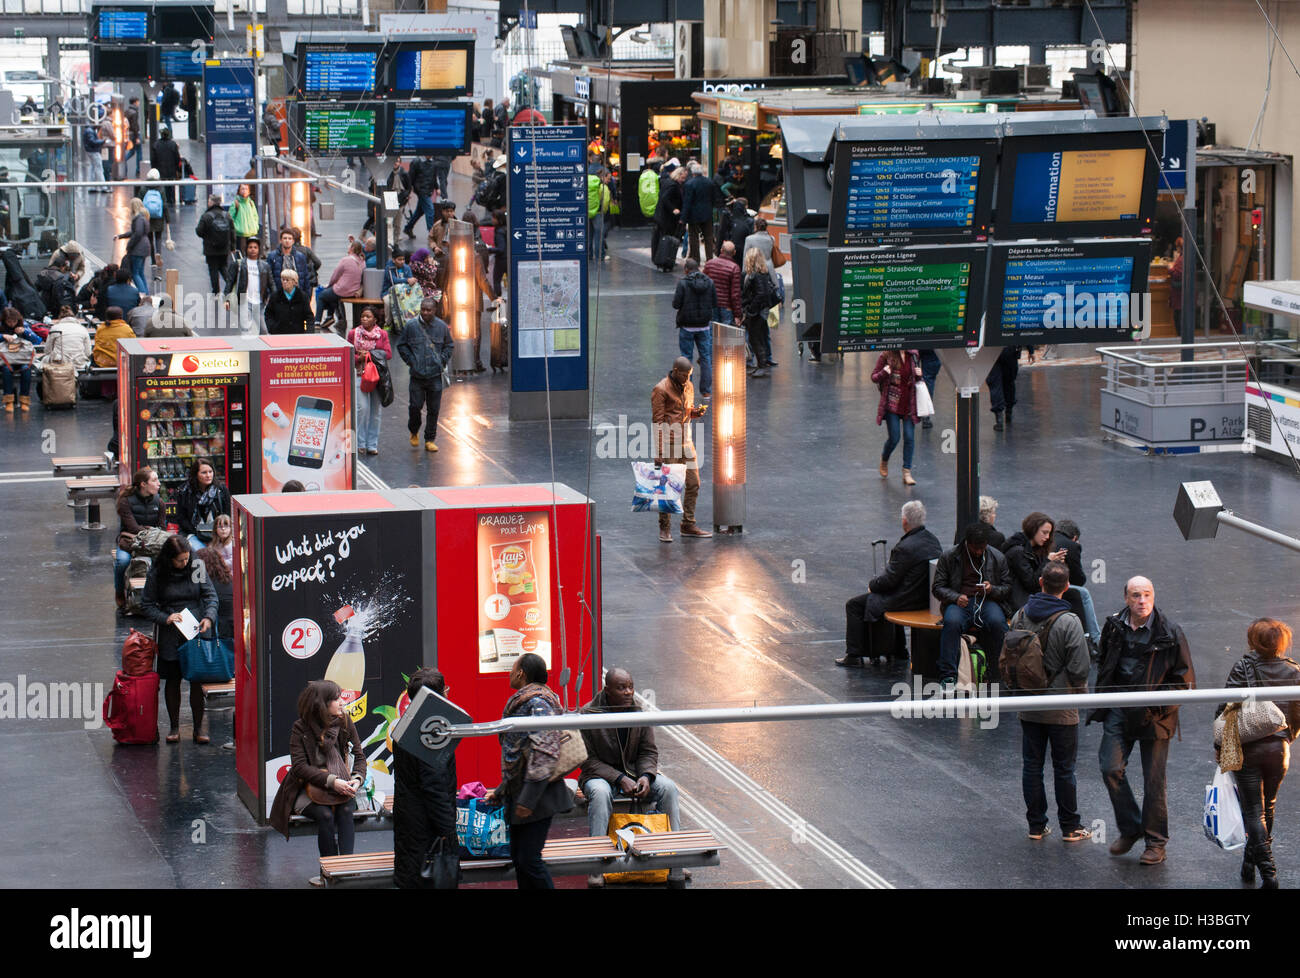 Station concourse at Gare de L'Est Railway Station, Paris, France. Stock Photo